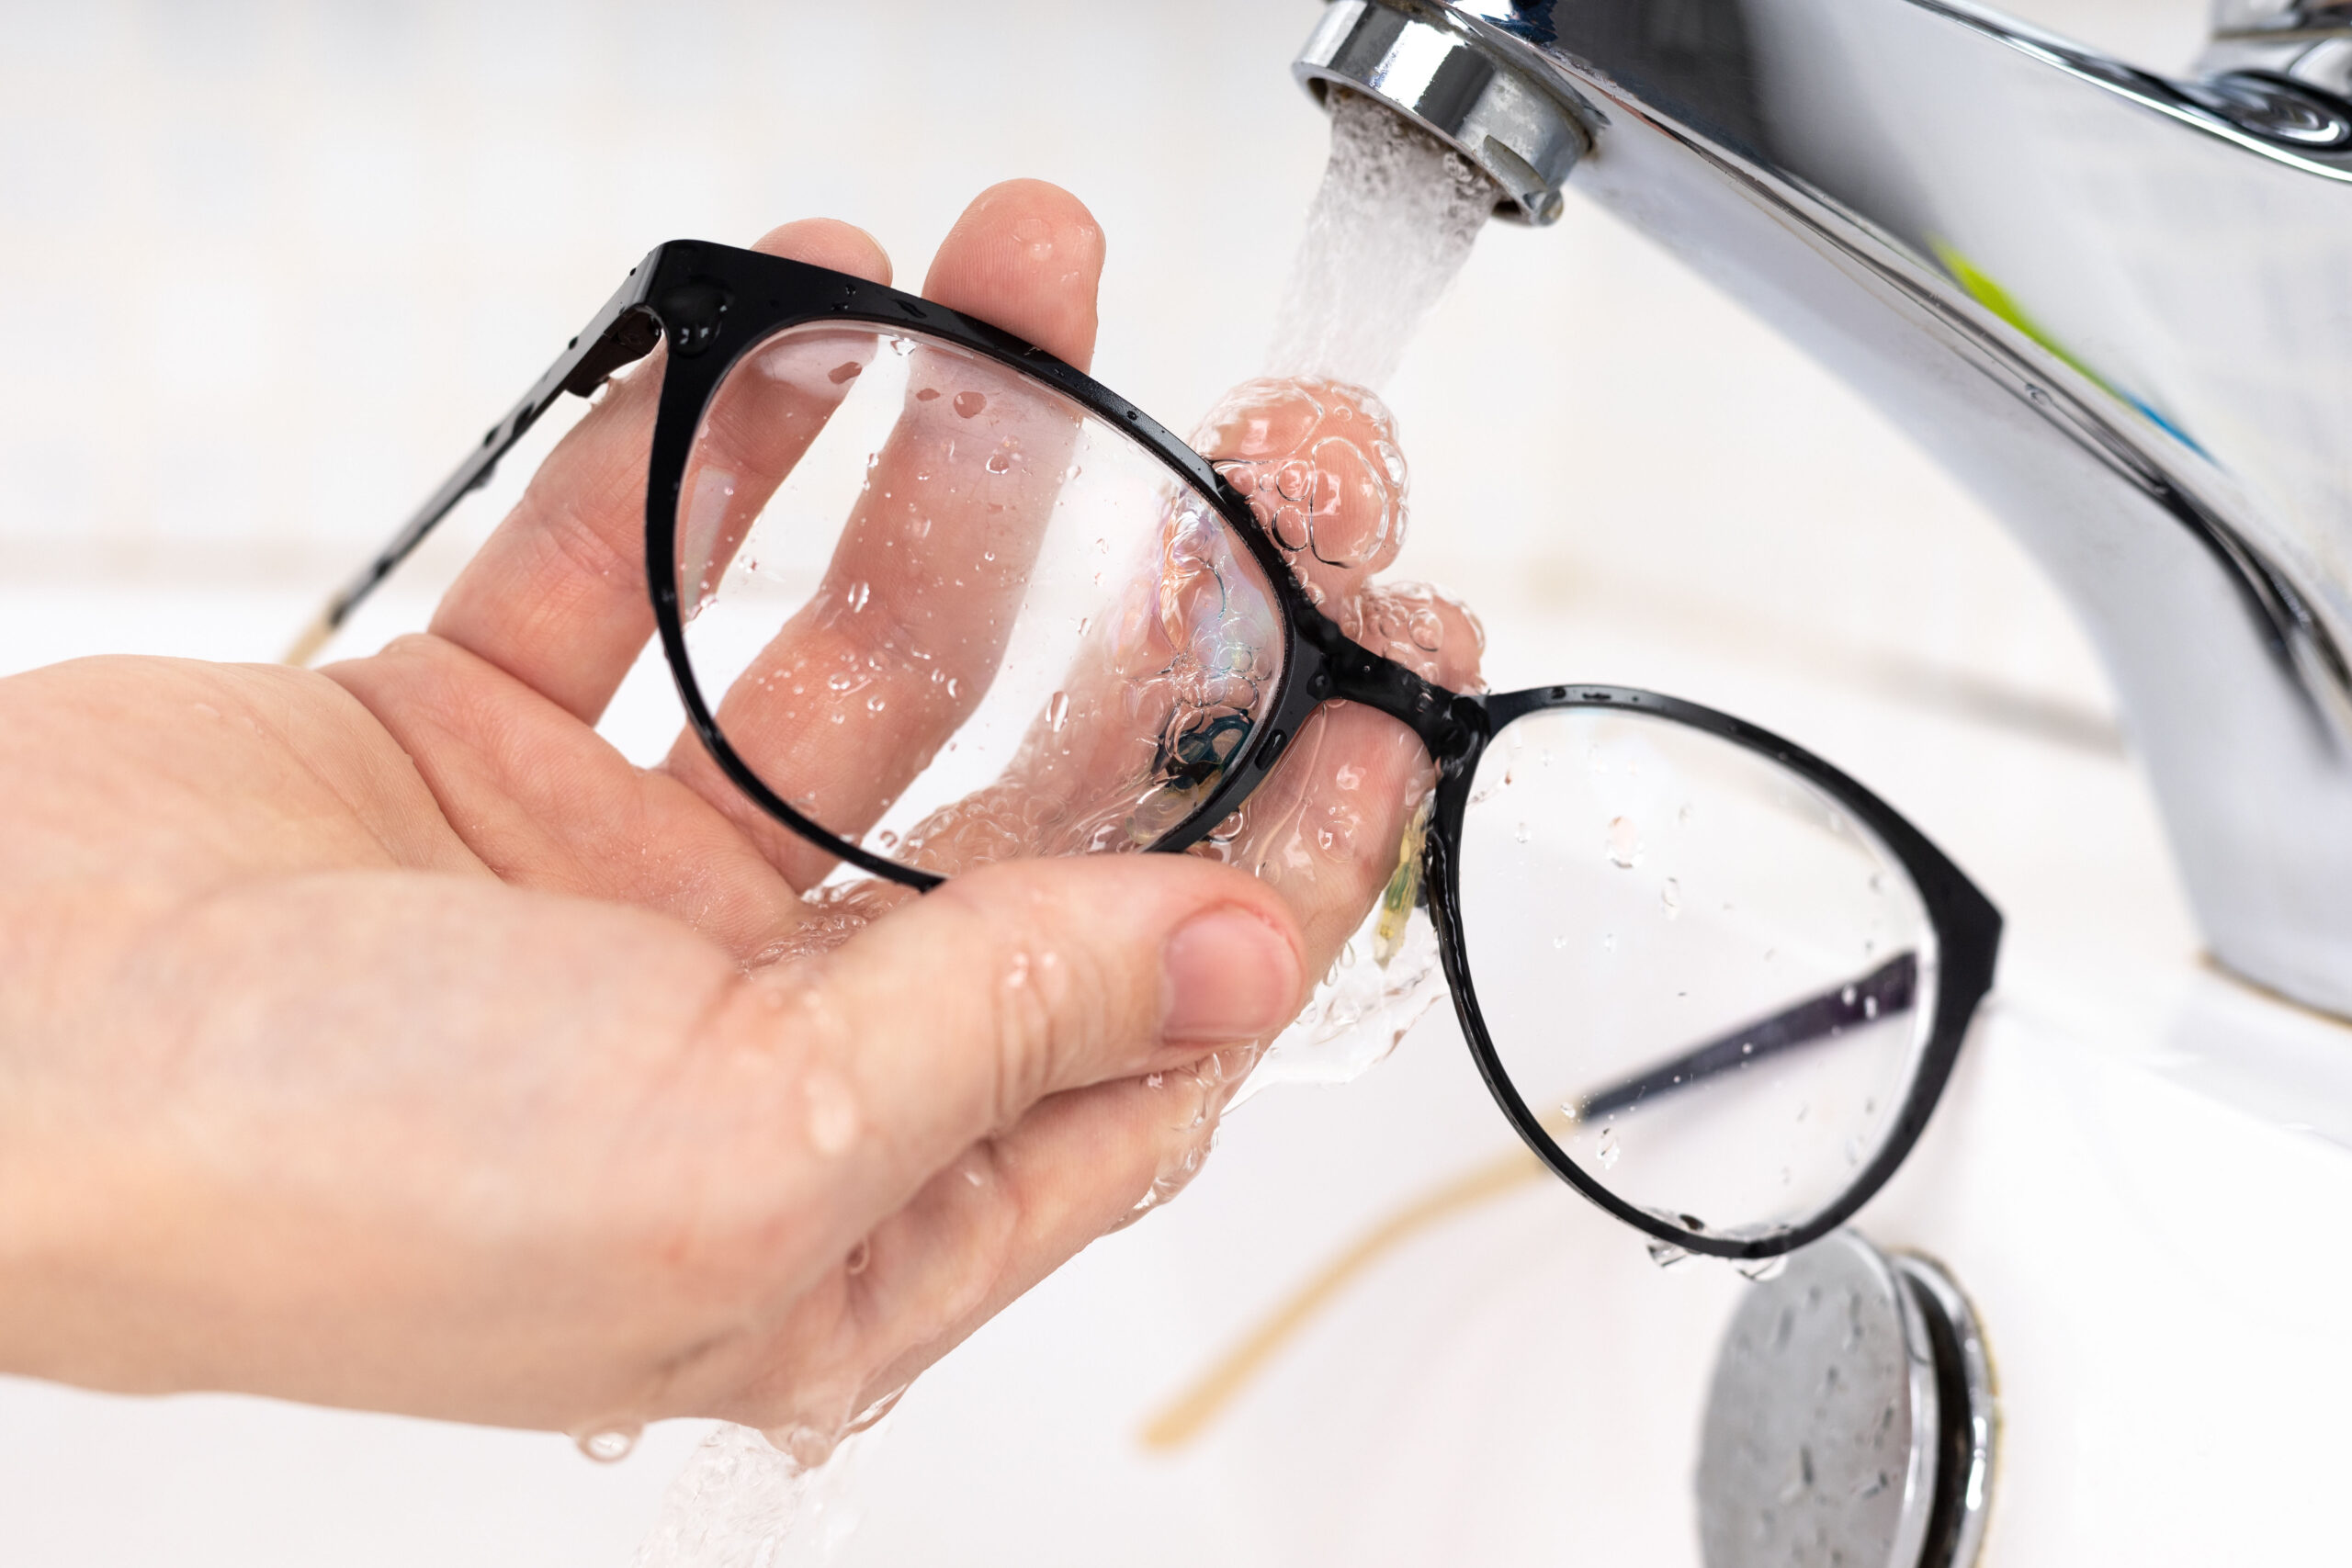 Come lavare correttamente gli occhiali